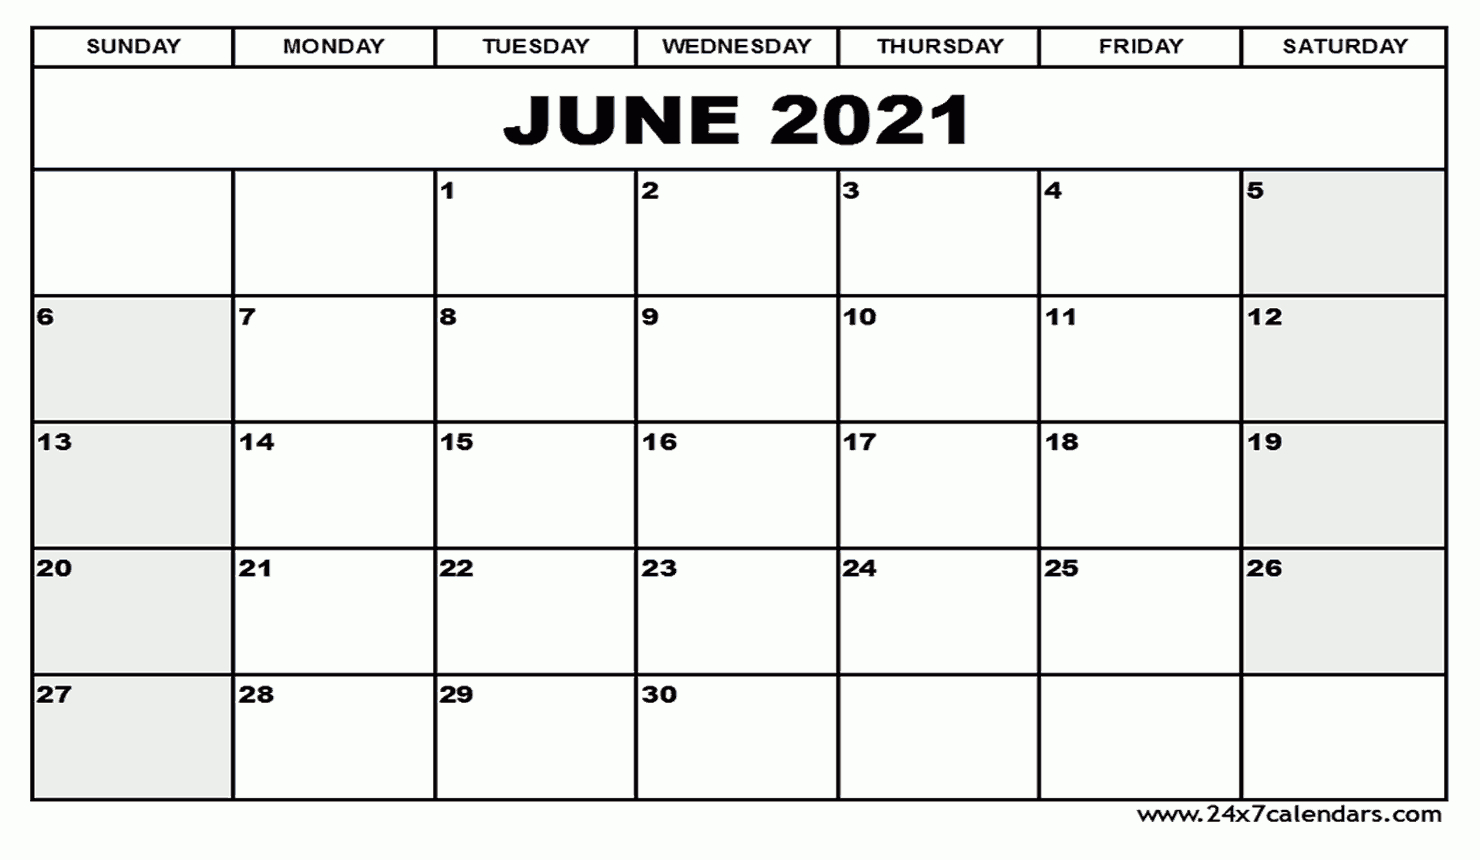 Free Printable June 2021 Calendar : 24X7Calendars-June 2021 Calendar Printable Template